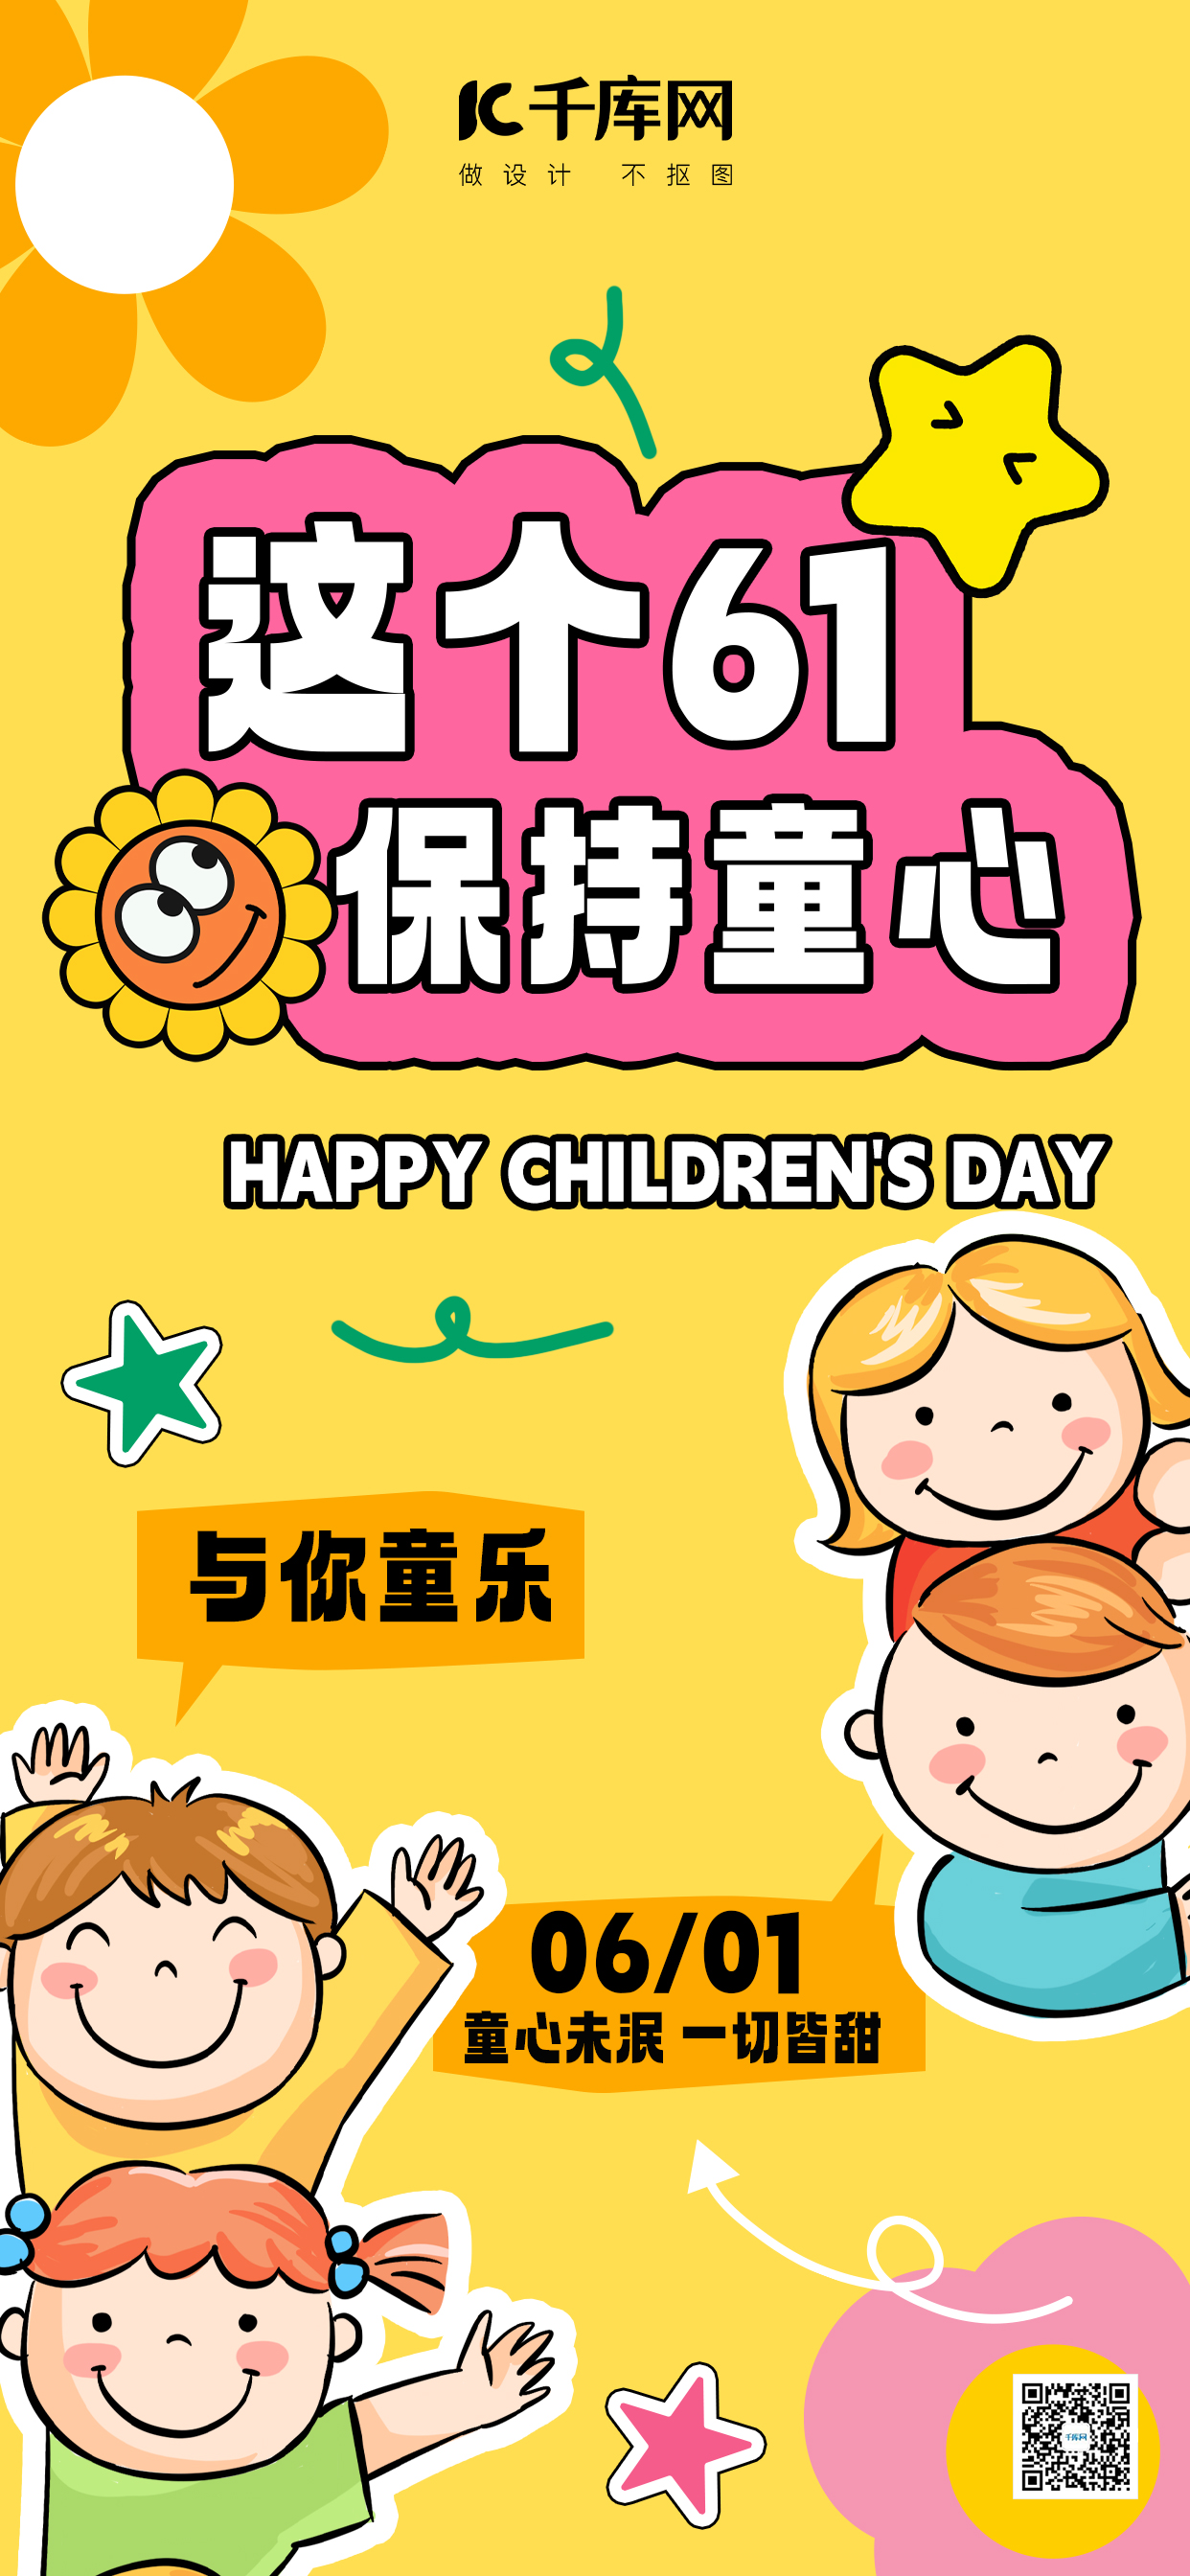 六一儿童节儿童黄山拼贴风全屏广告宣传海报图片